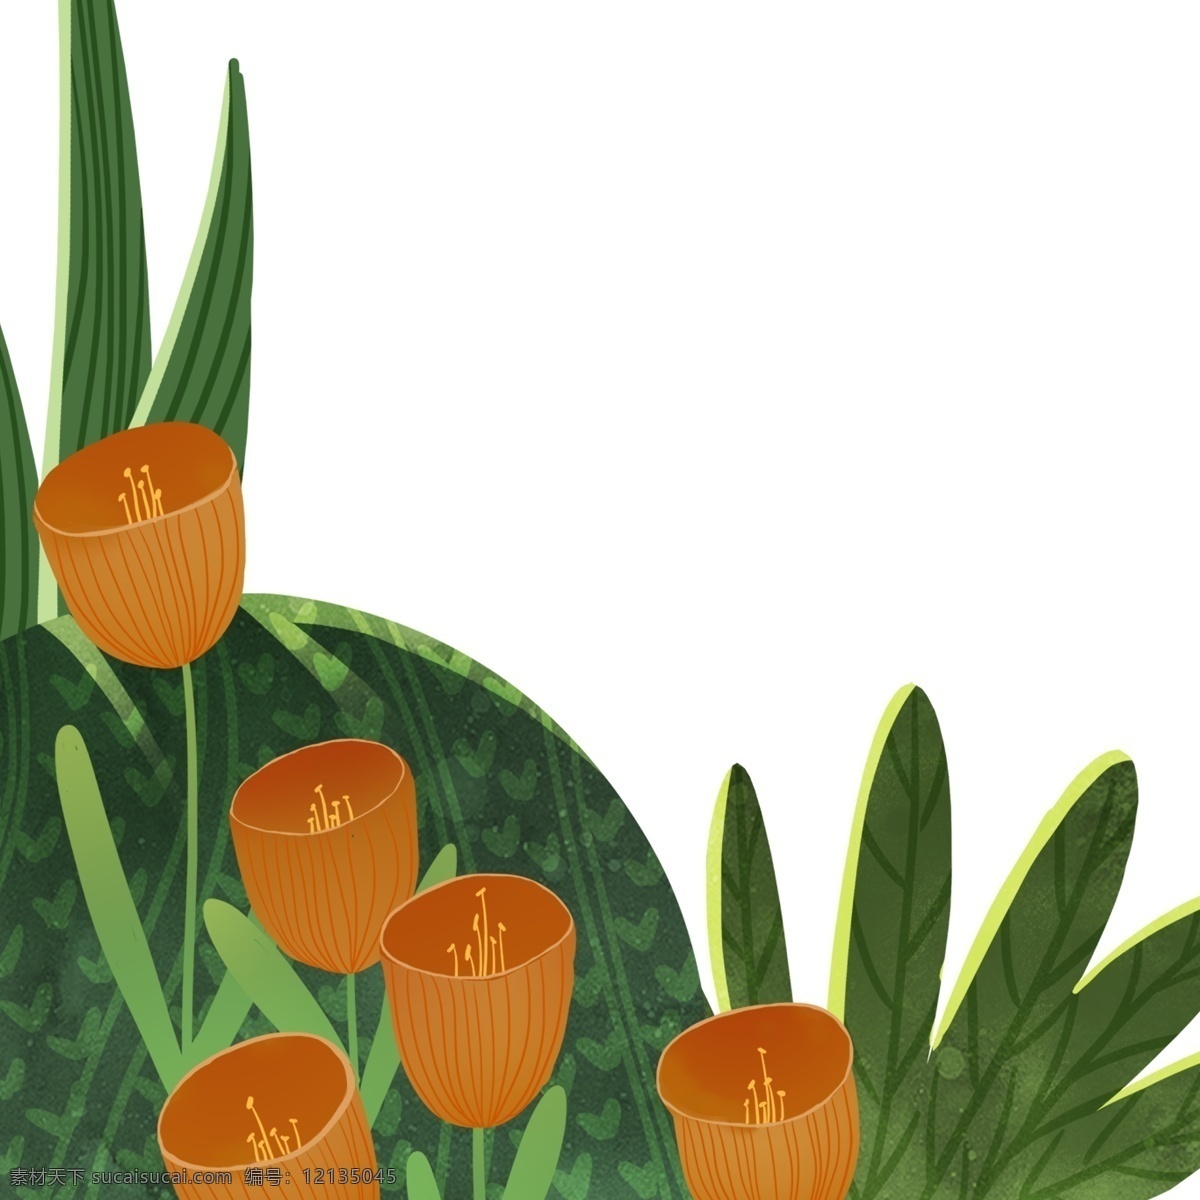 绿色植物 草丛 装饰 植物 花朵 绘画 插画元素 设计元素 卡通 彩色 简约 小清新 精致